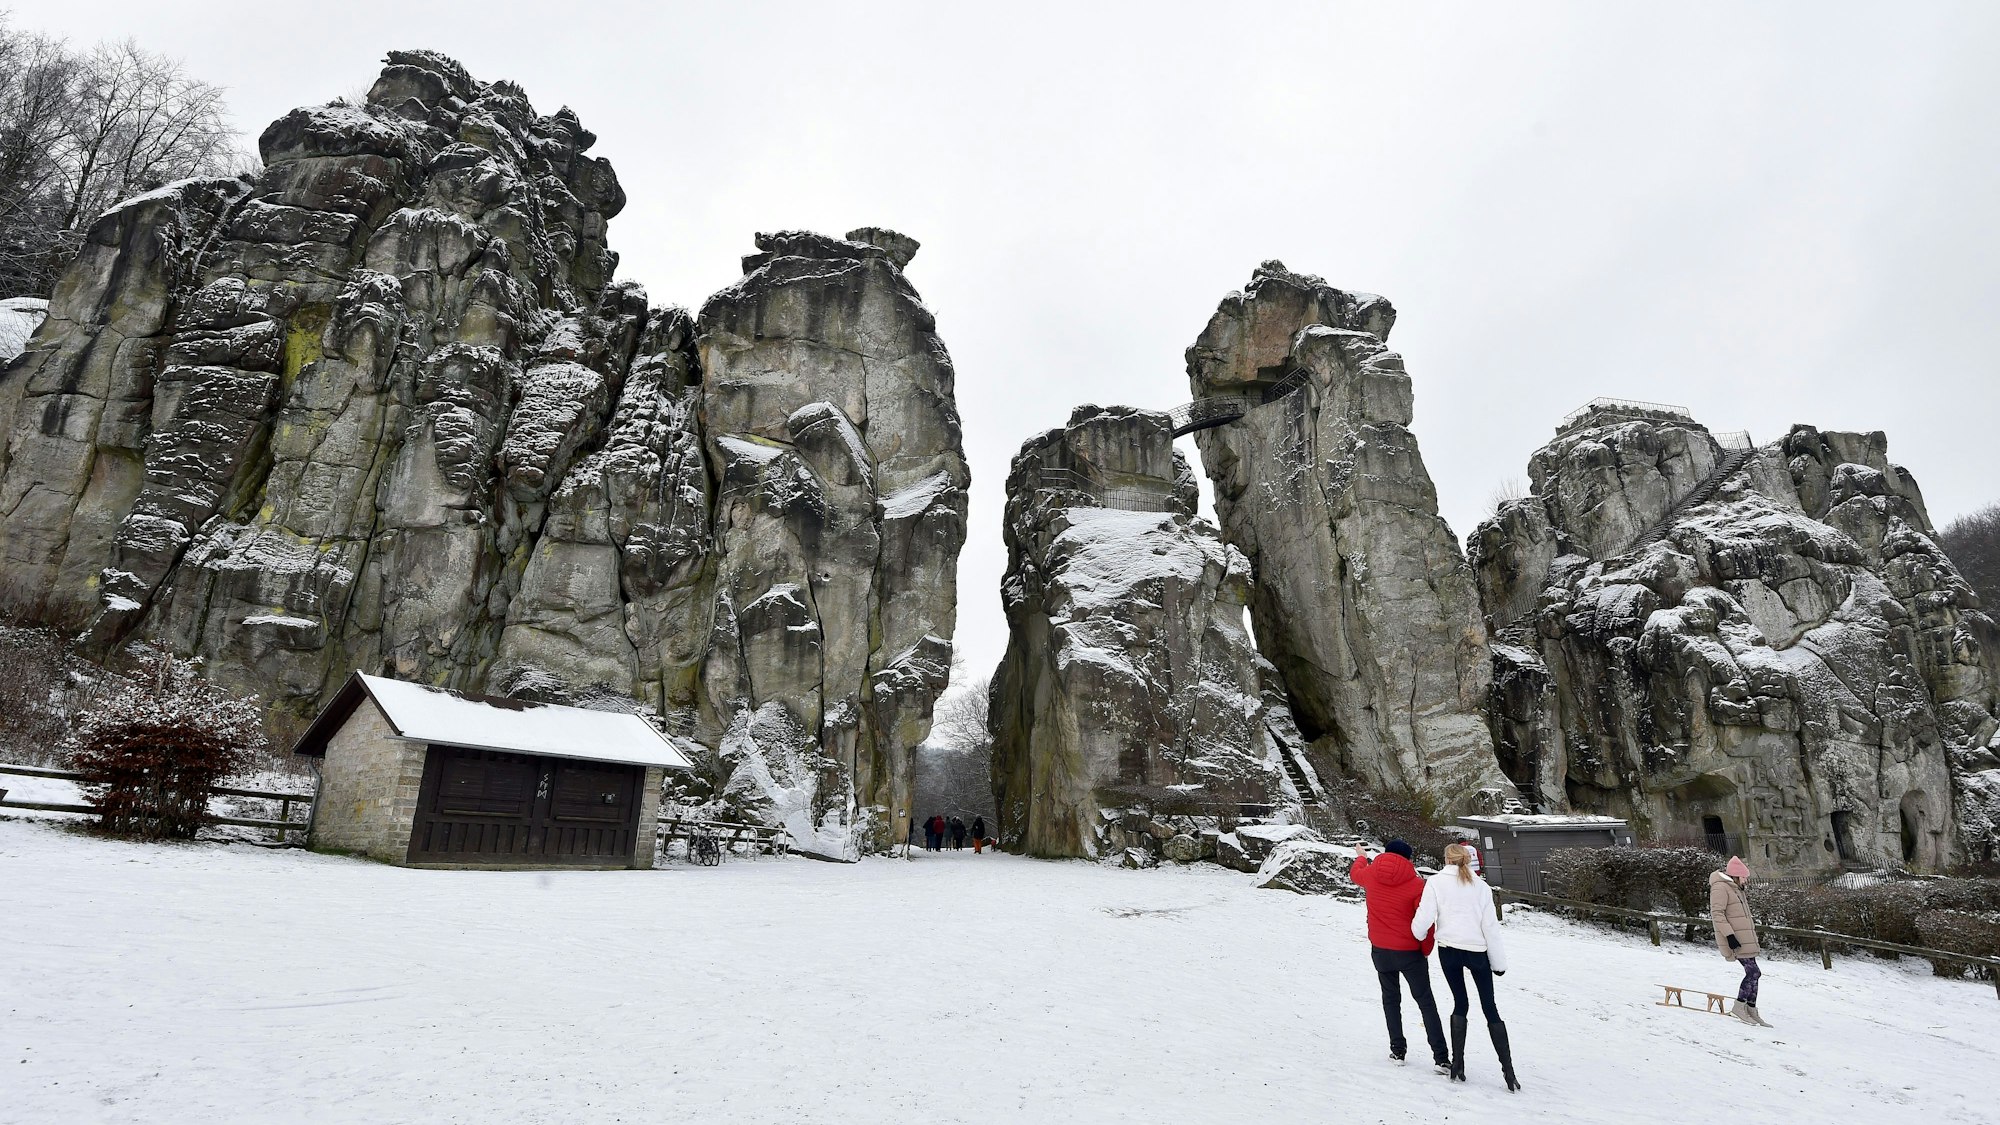 Spaziergänger stehen vor den schneebedeckten Externsteinen